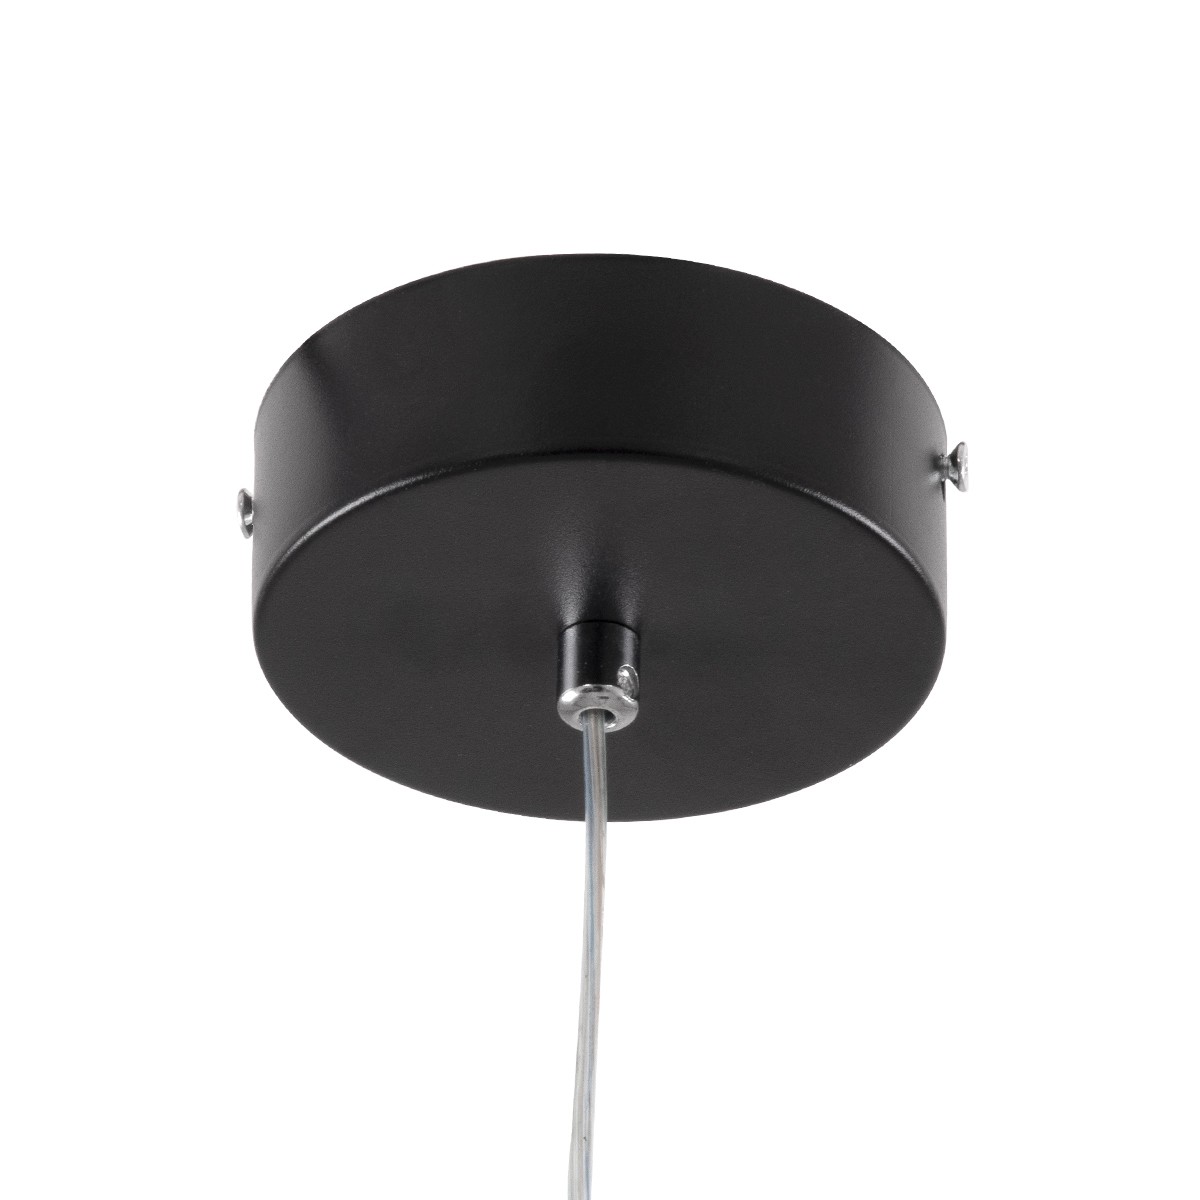 LED Κρεμαστό Φωτιστικό Οροφής Μαύρο Design ROSE 22W Εναλλαγή Φωτισμού μέσω Διακόπτη On/Off Μ24 x Π22 x Υ24cm 61064